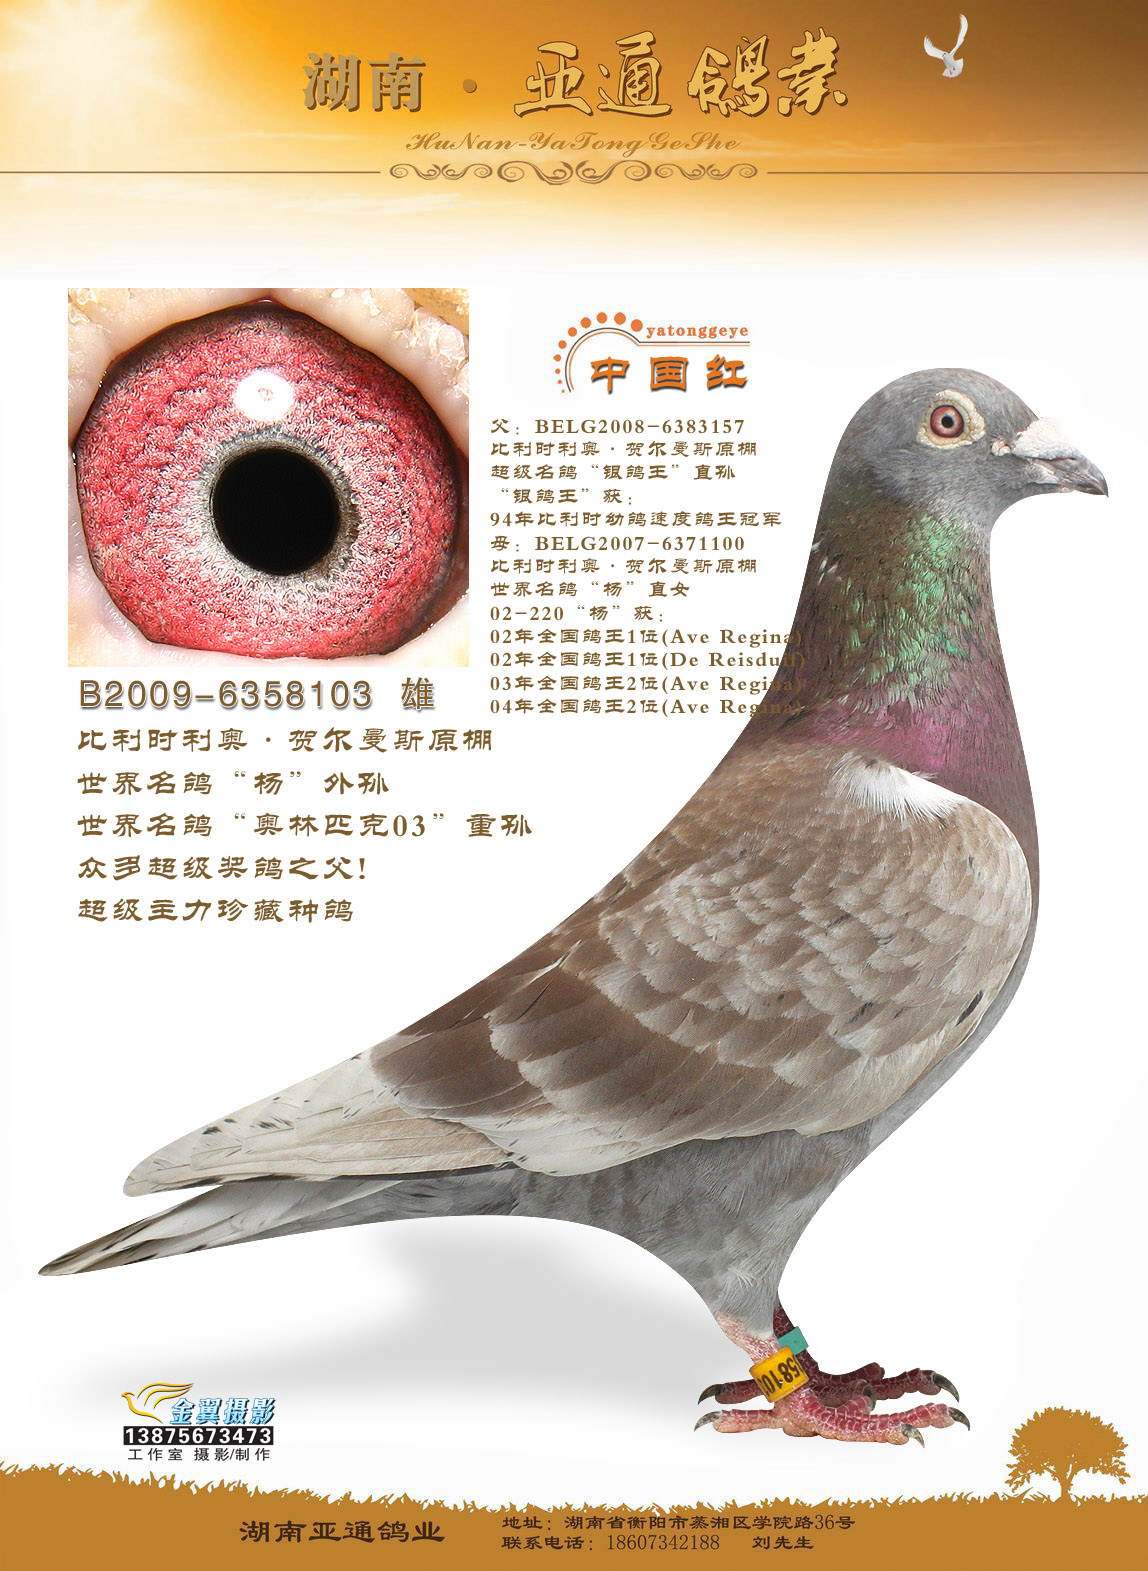 利奥·贺尔曼斯顶级种鸽中国红直女 保证金级 拍卖